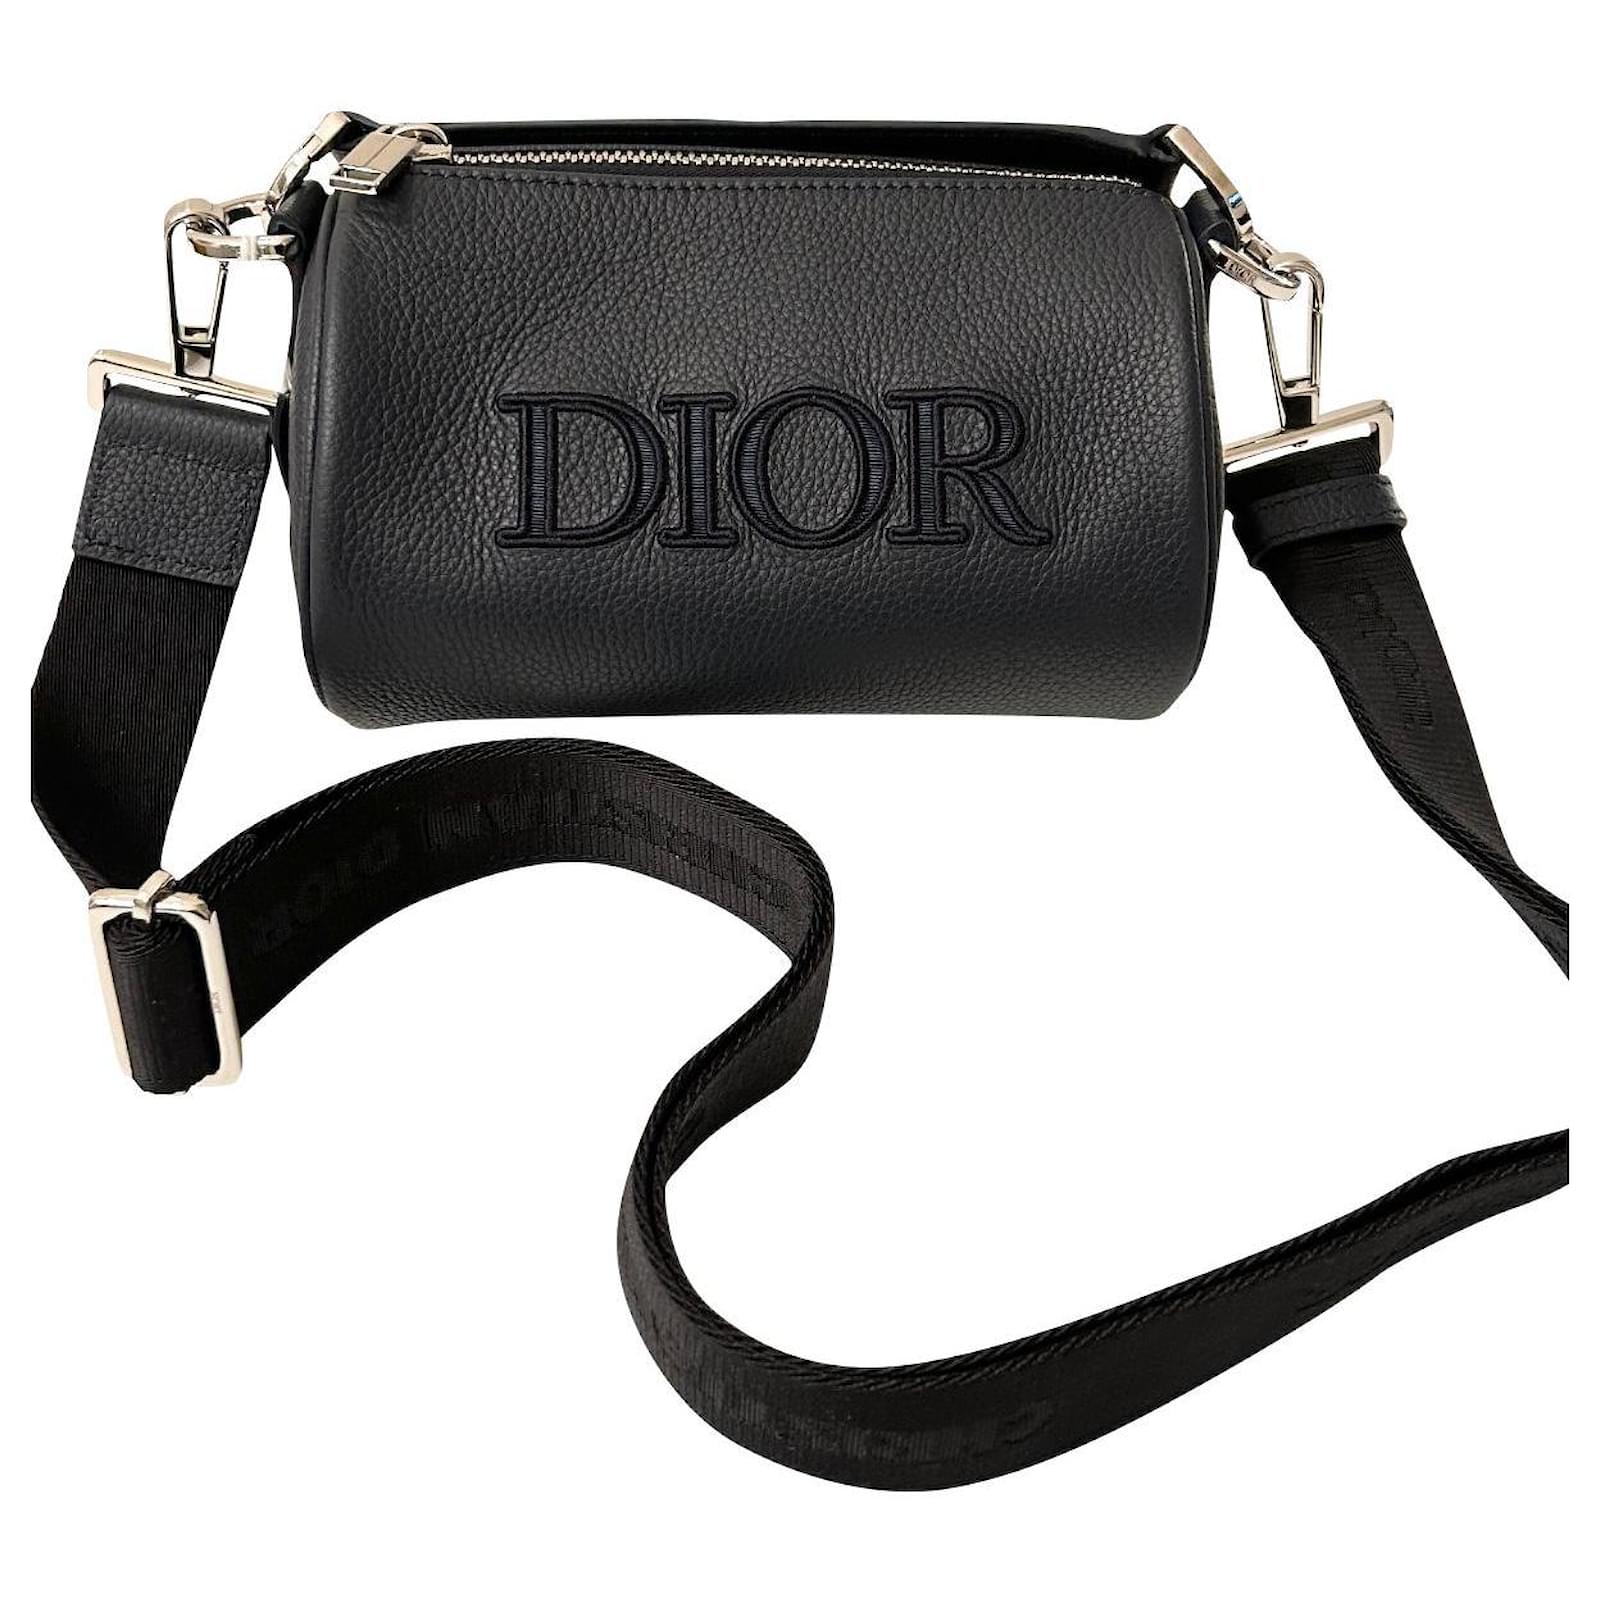 Roller Messenger Bag Black  Mens Dior Shoulder Bags